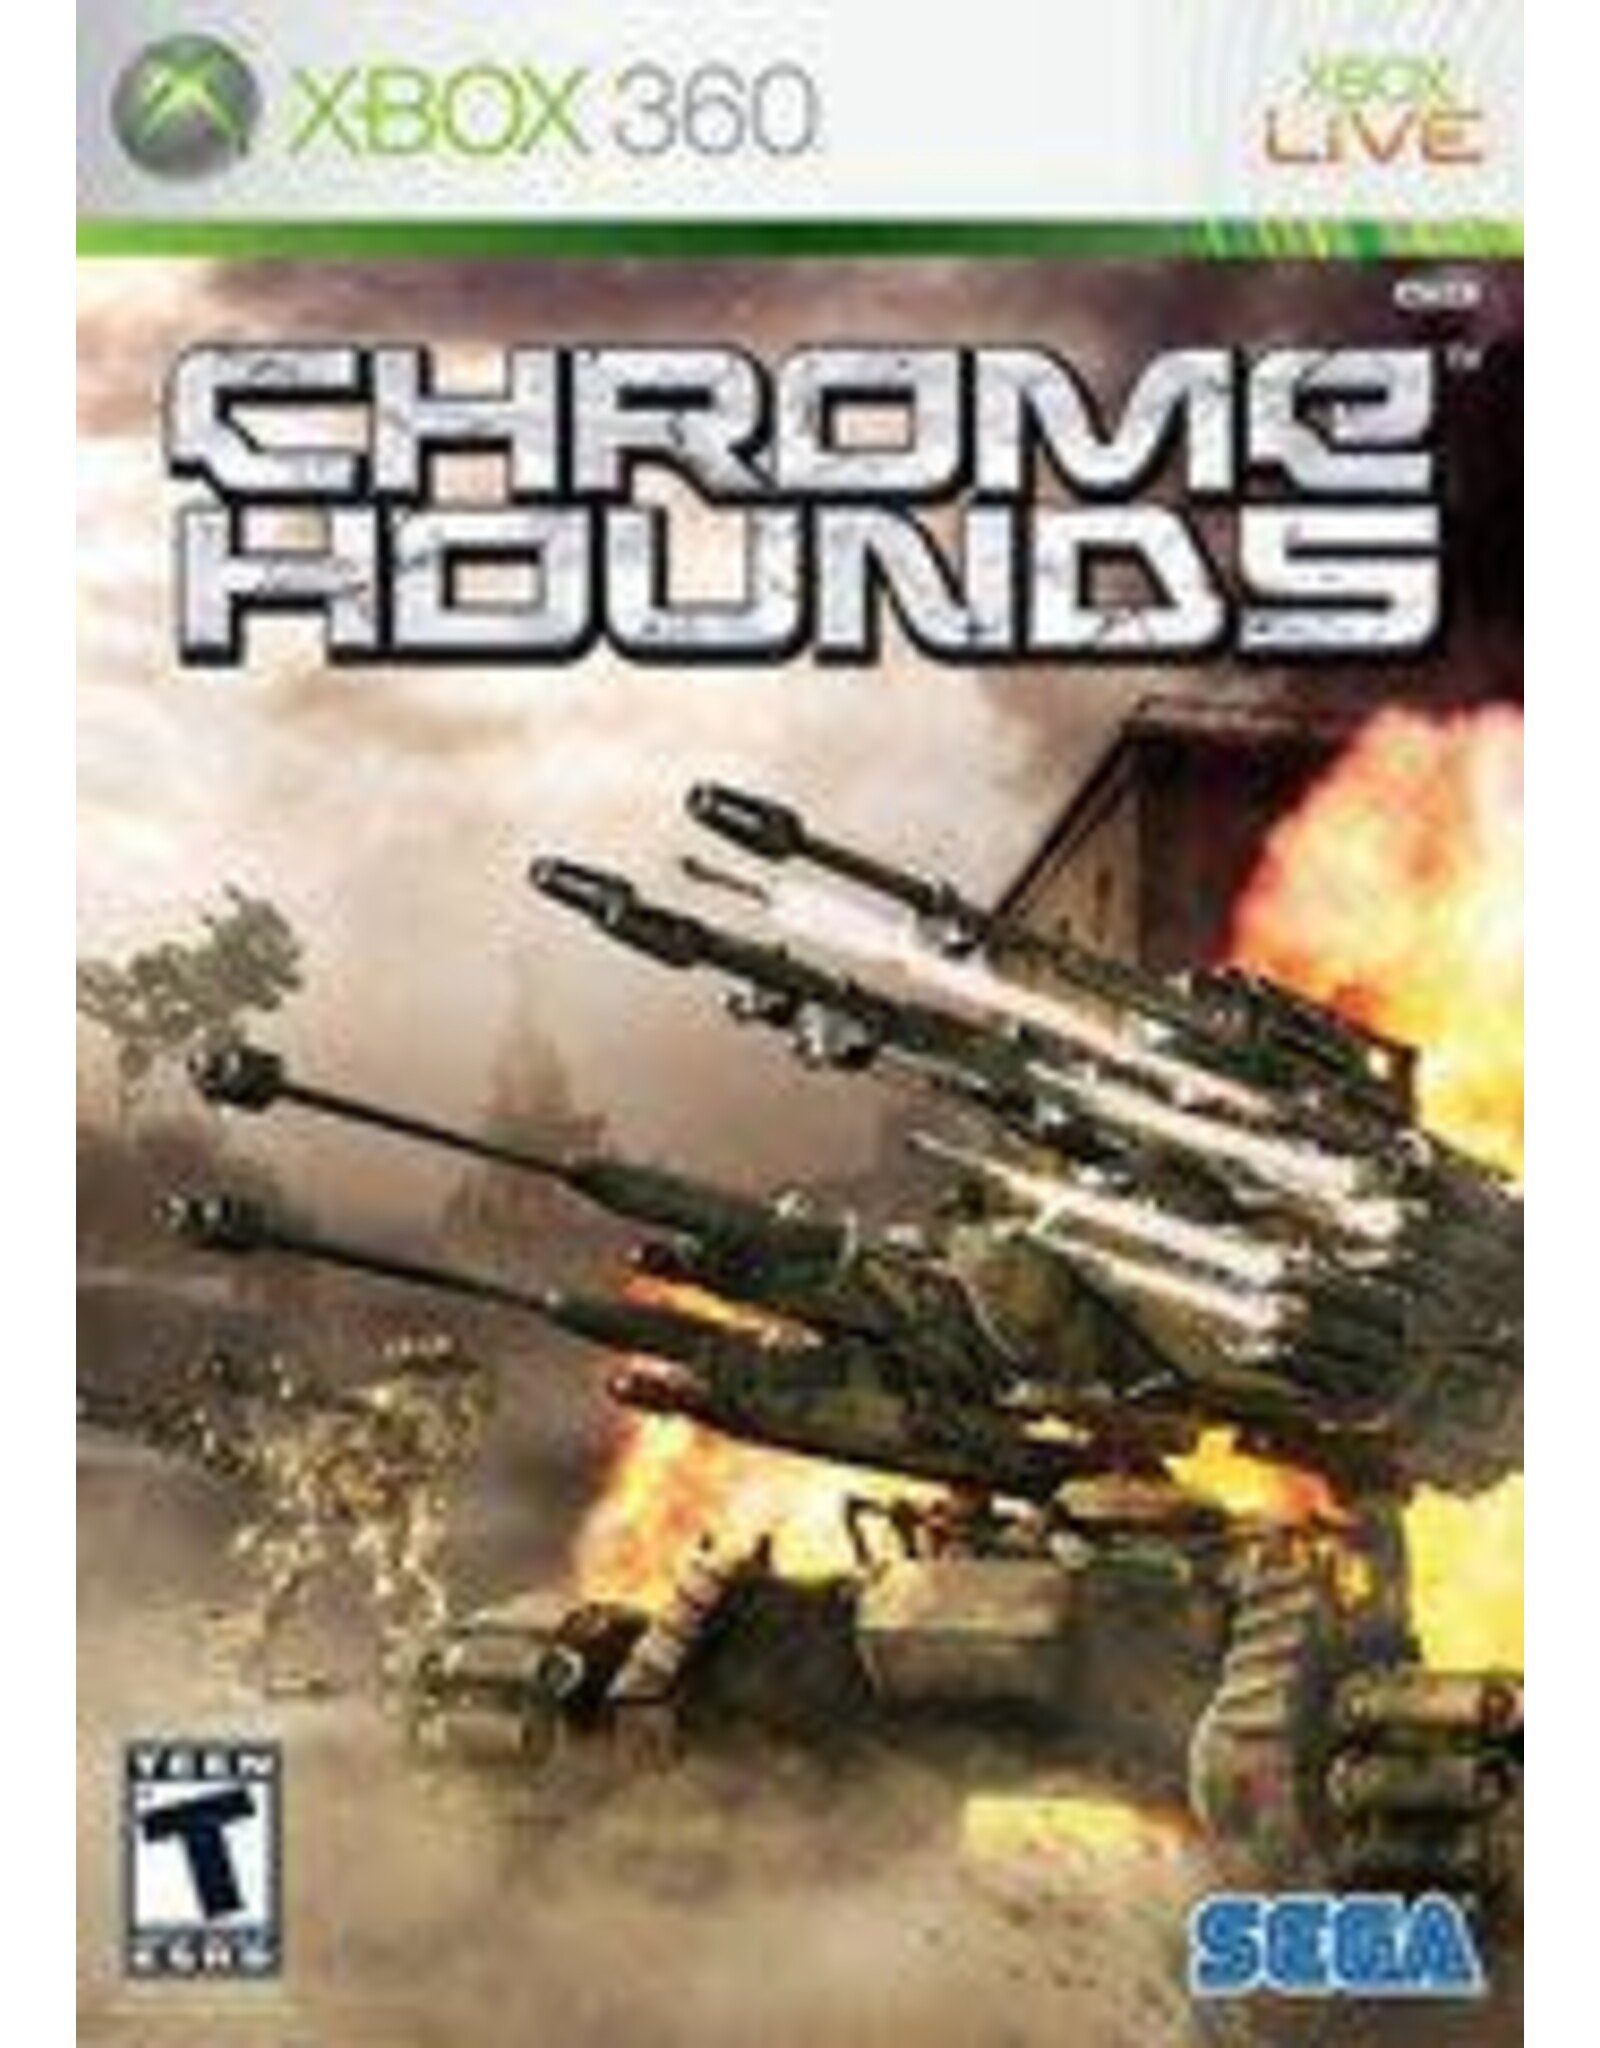 Xbox 360 Chrome Hounds (No Manual)